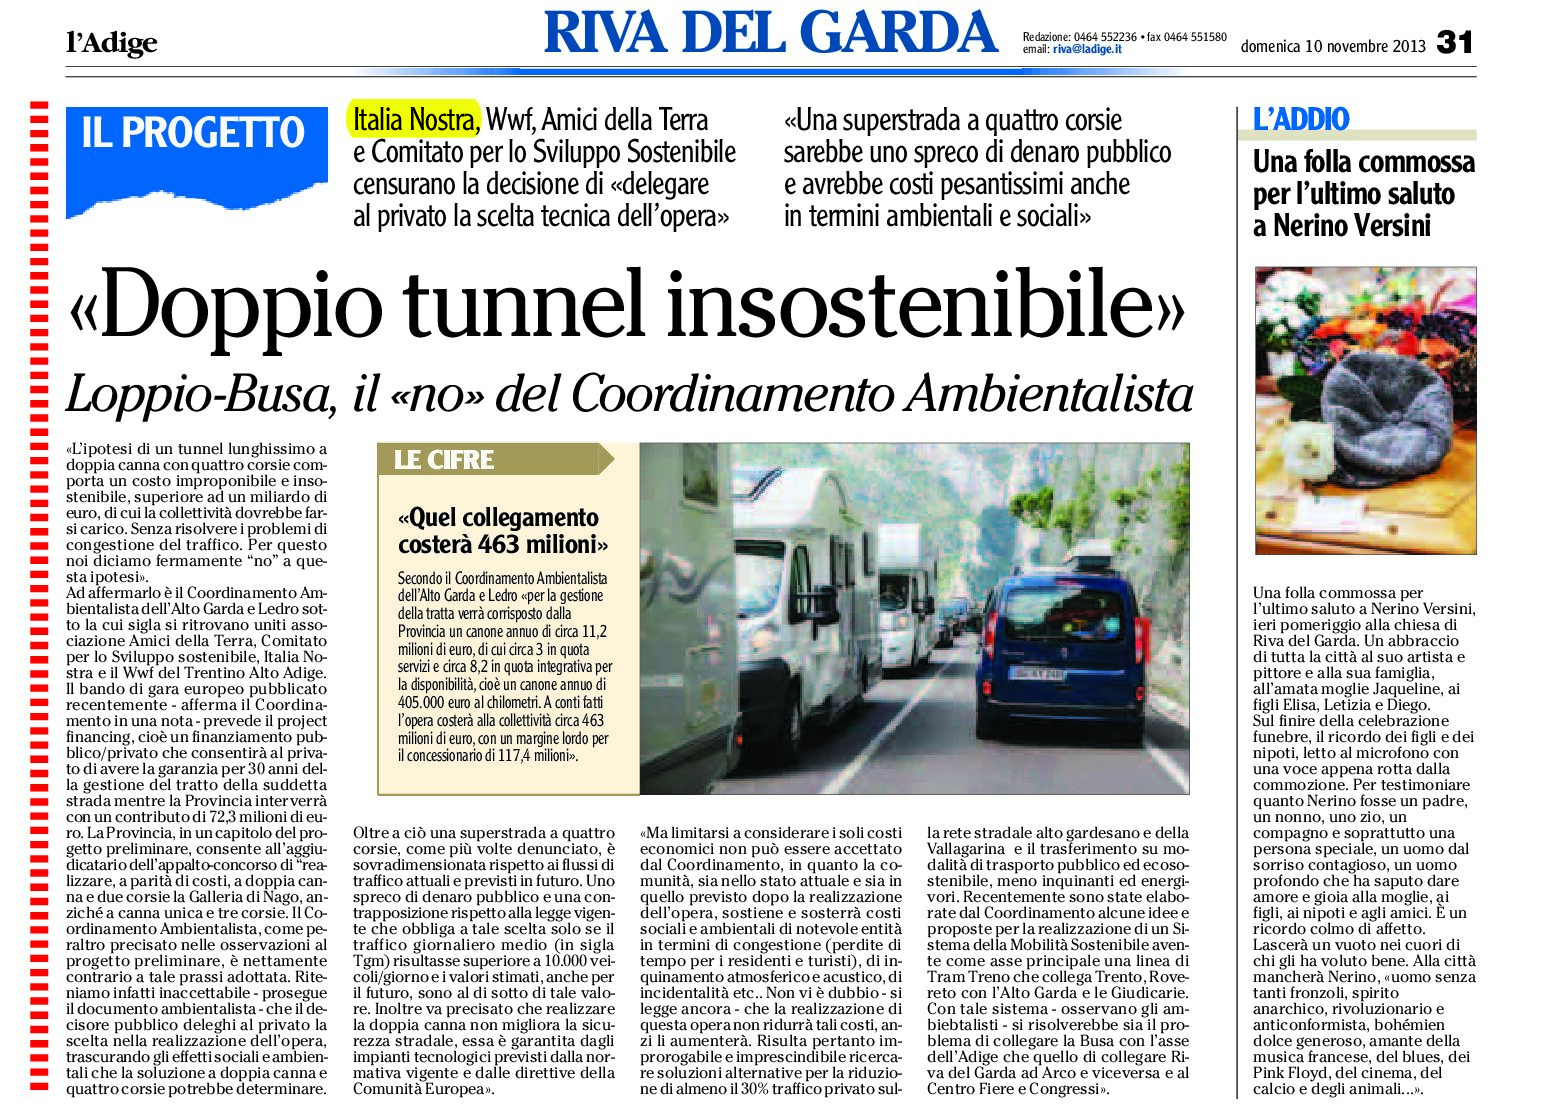 Loppio-Busa: doppio tunnel insostenibile. Il “no” del Comitato Ambientalista